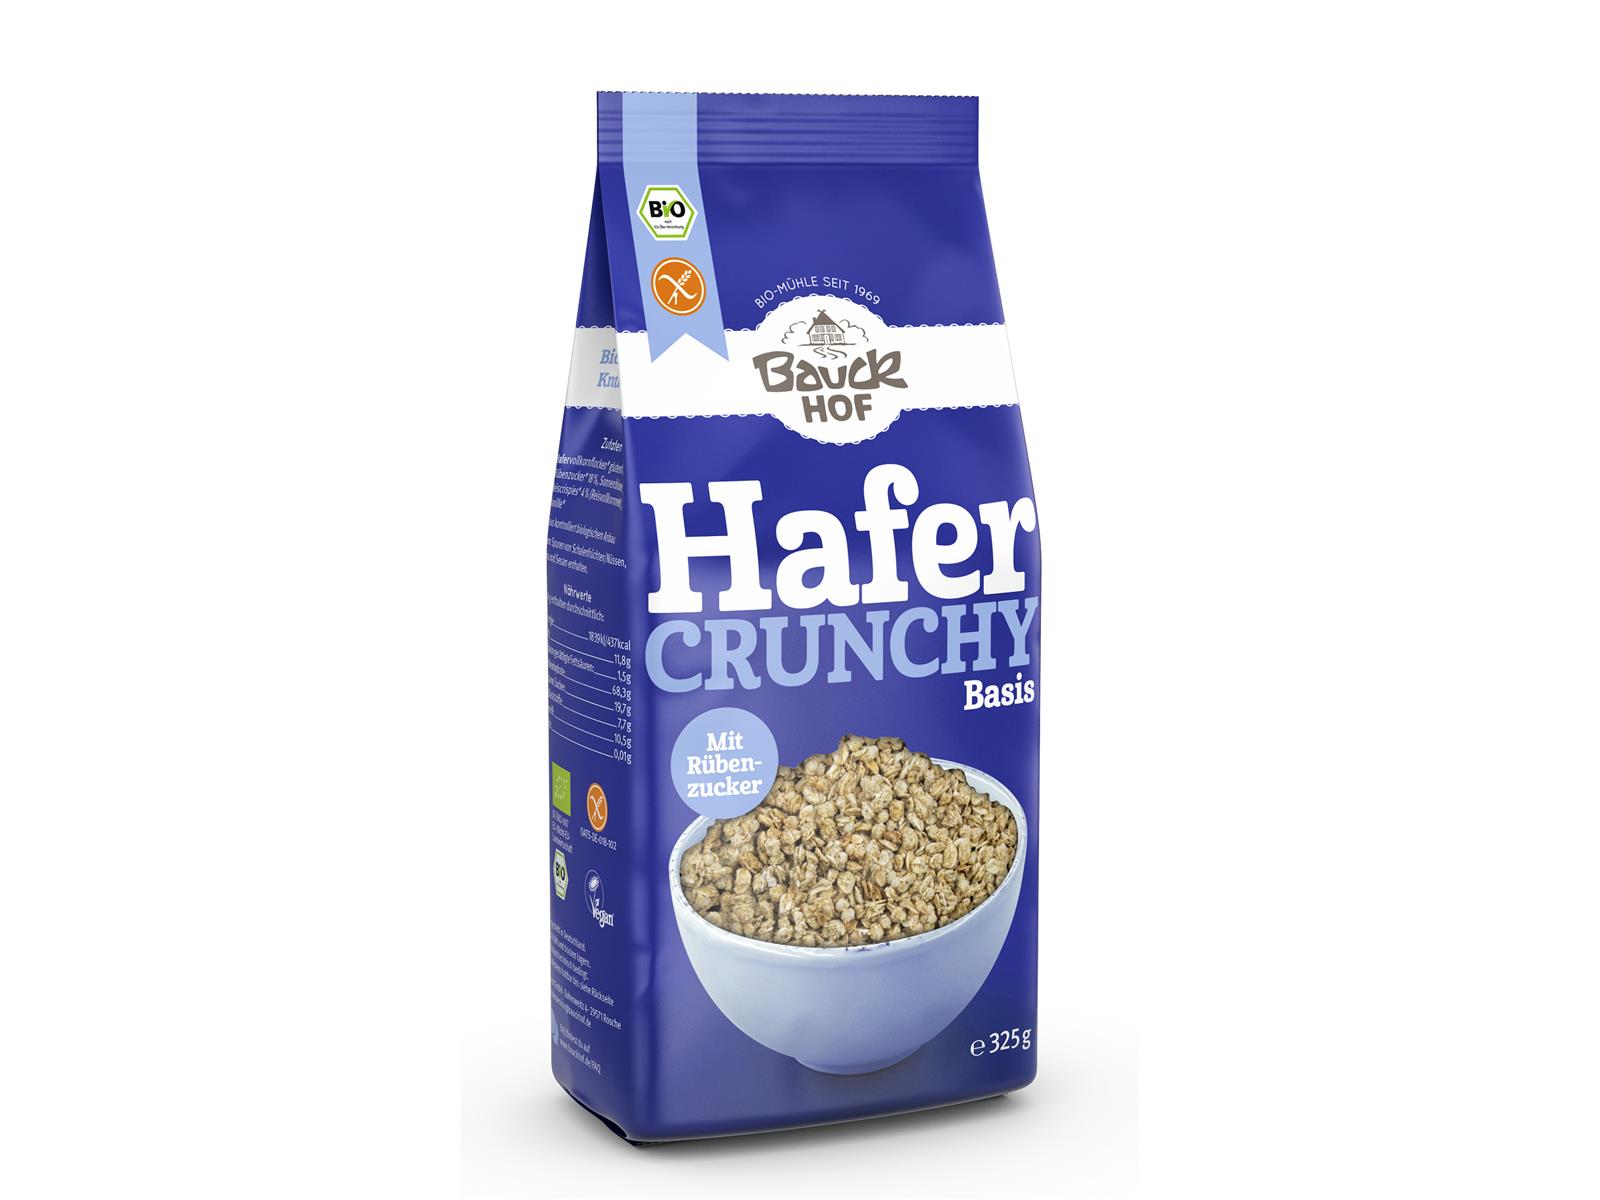 Bauckhof Hafer Crunchy Basis glf 325 g